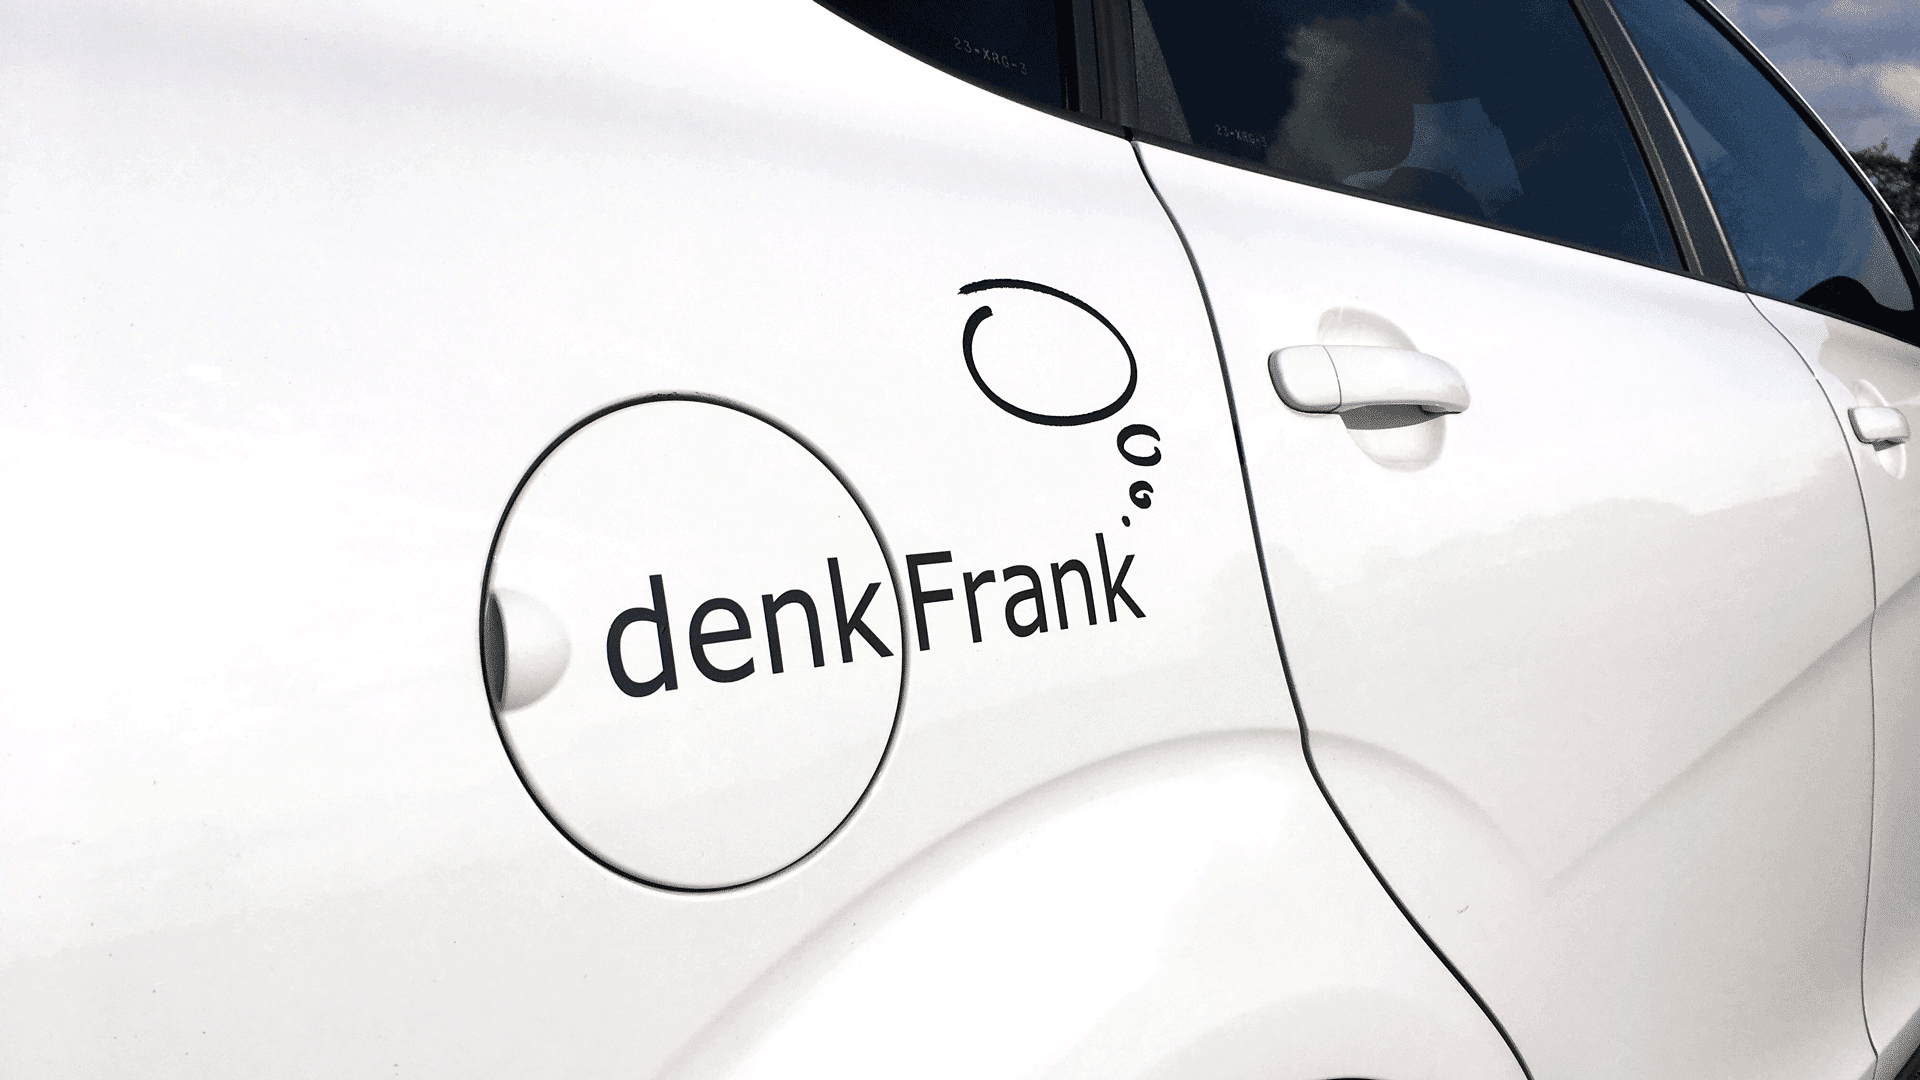 denkFrank_auto_tank